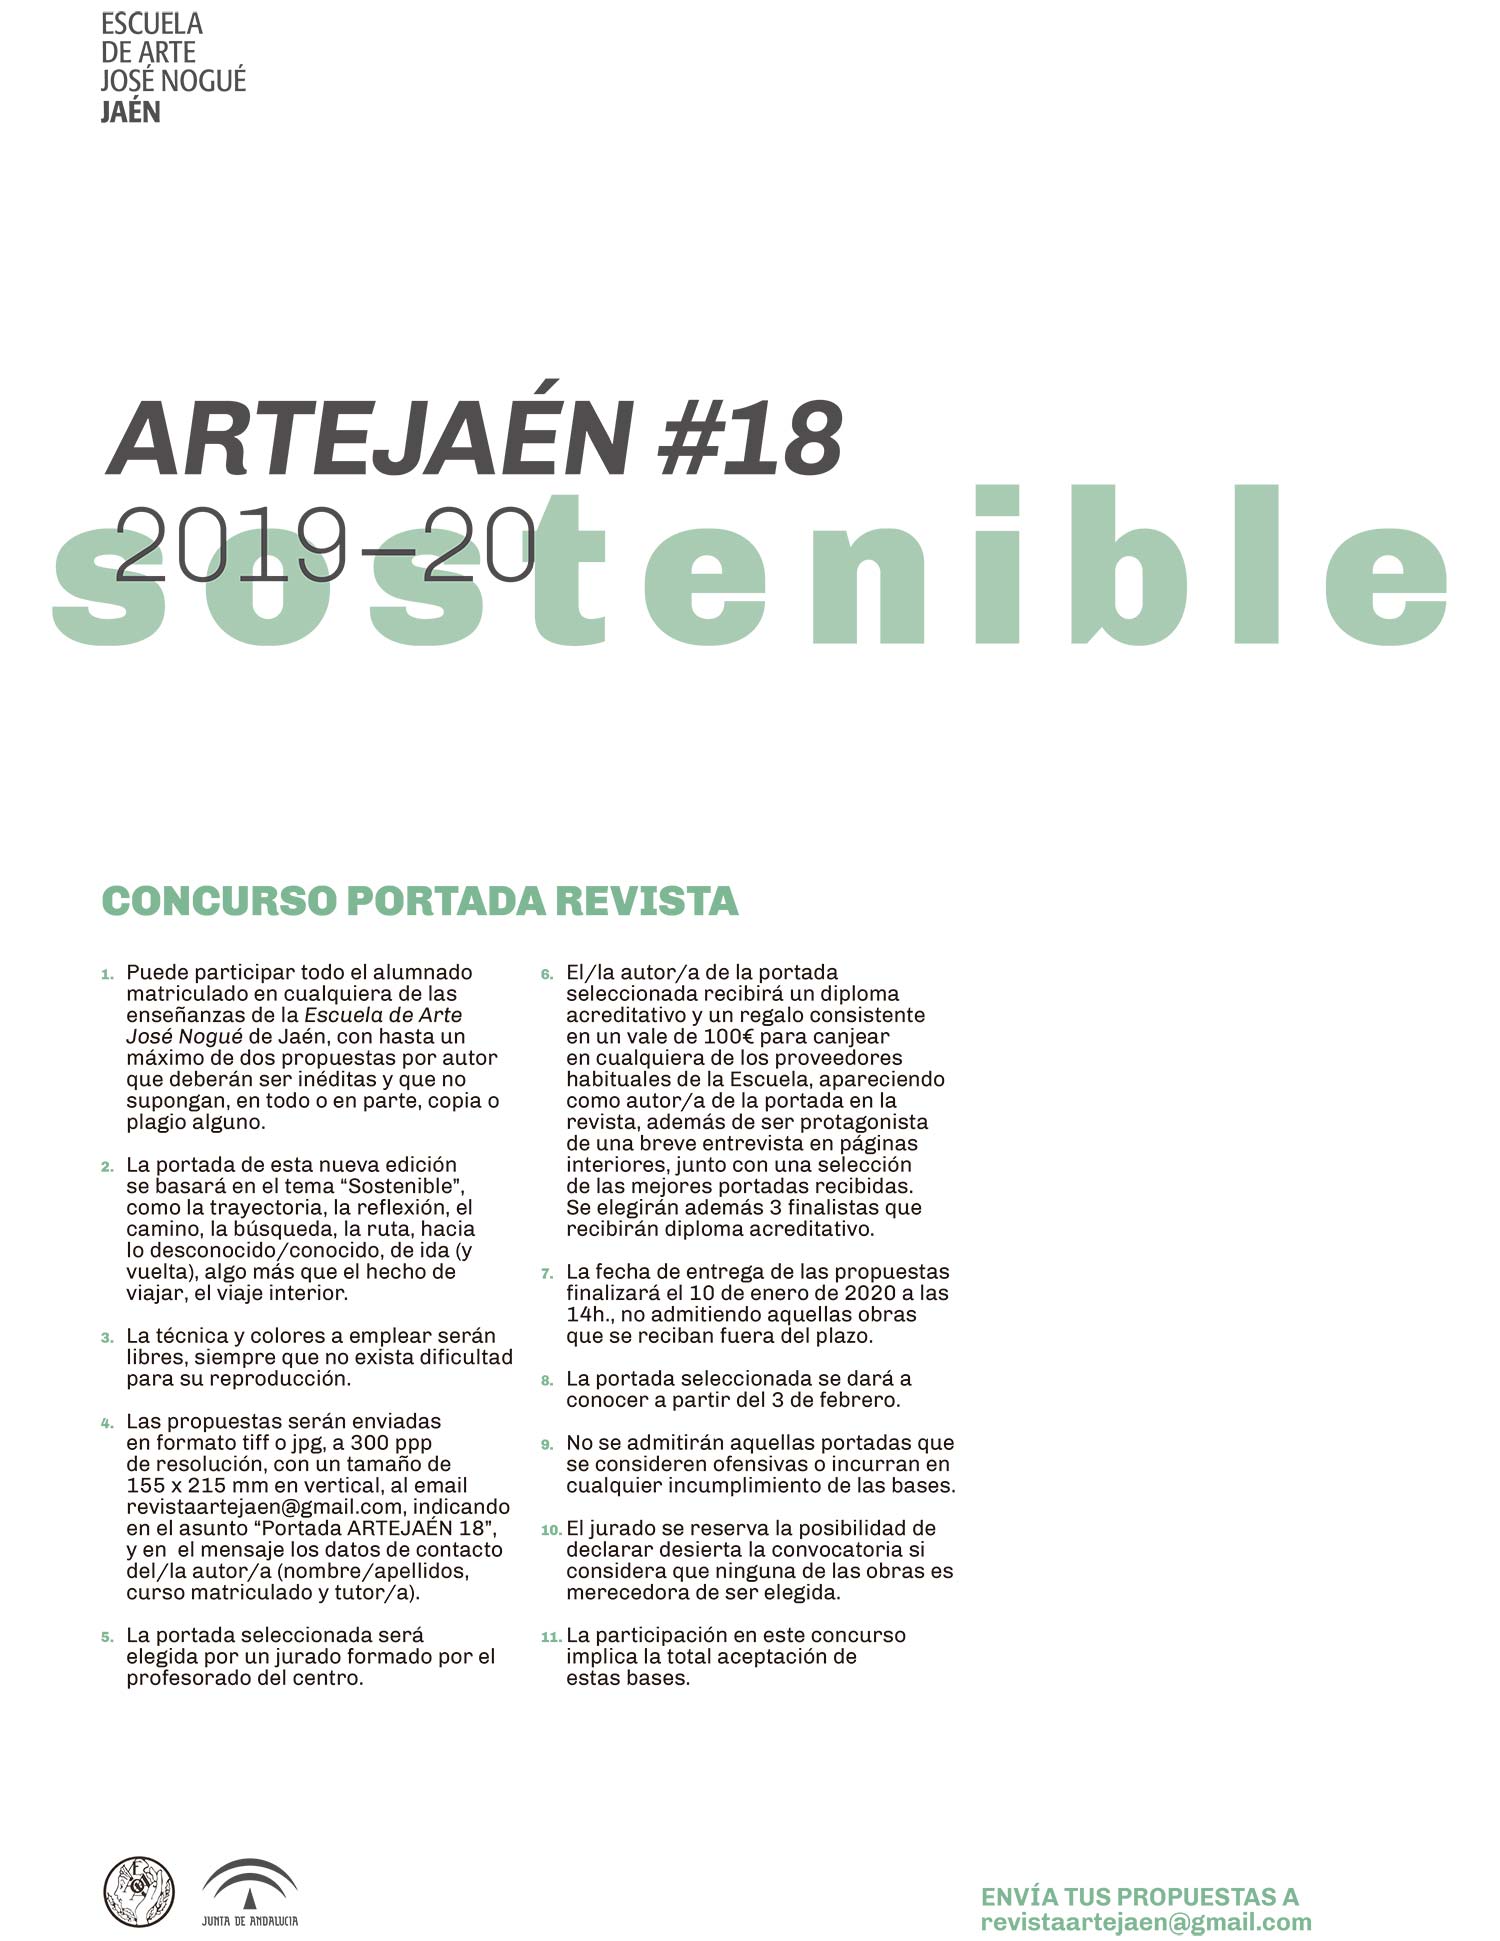 Se ha convocado el concurso para la portada del número 18 de la revista  ARTEJAÉN. Consulta las bases aquí. - Escuela de Arte José Nogué